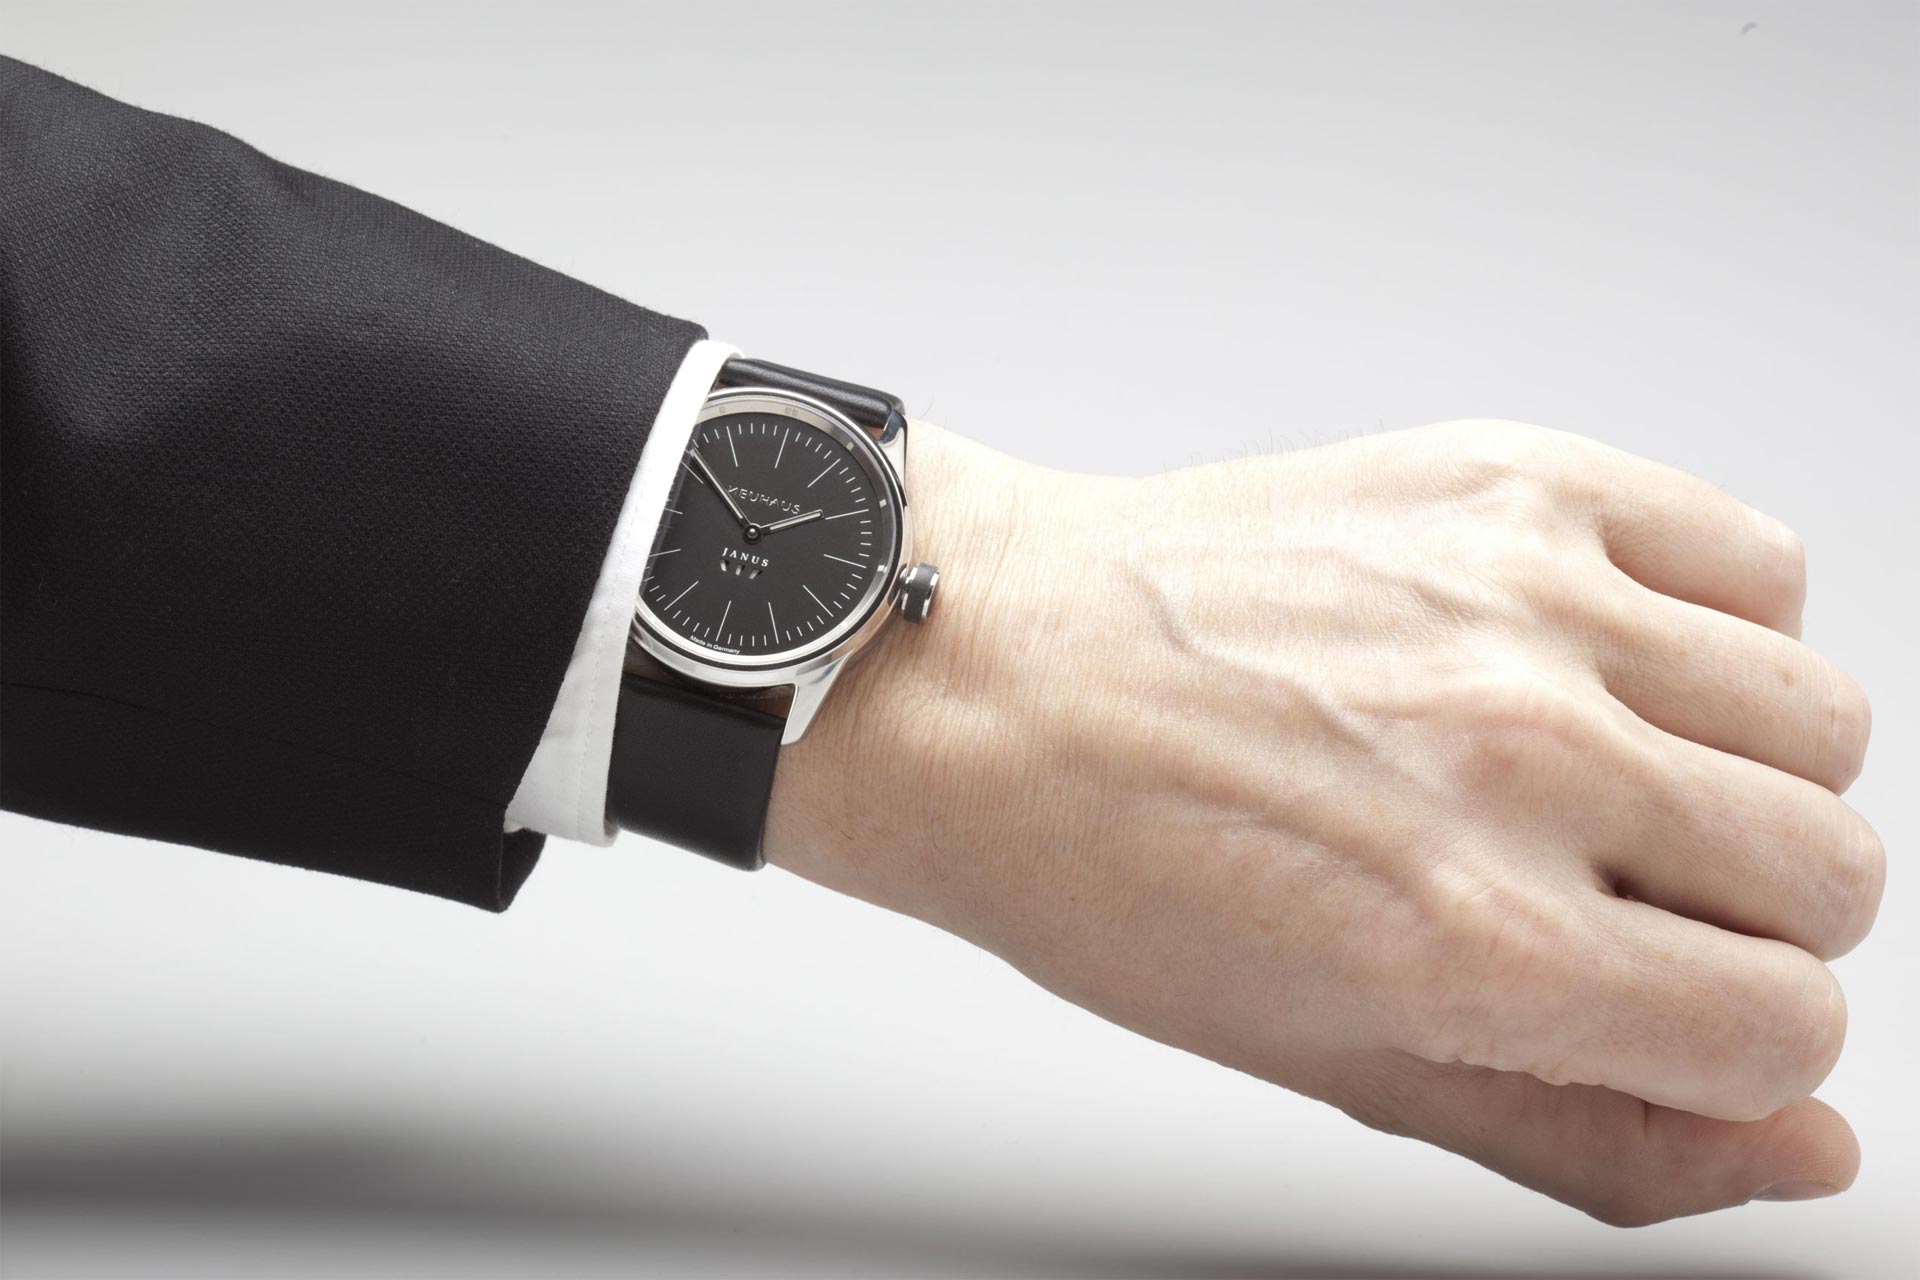 Zweizeigeruhr von NEUHAUS Timepieces, Modell JANUS minimal, mobil wristshot